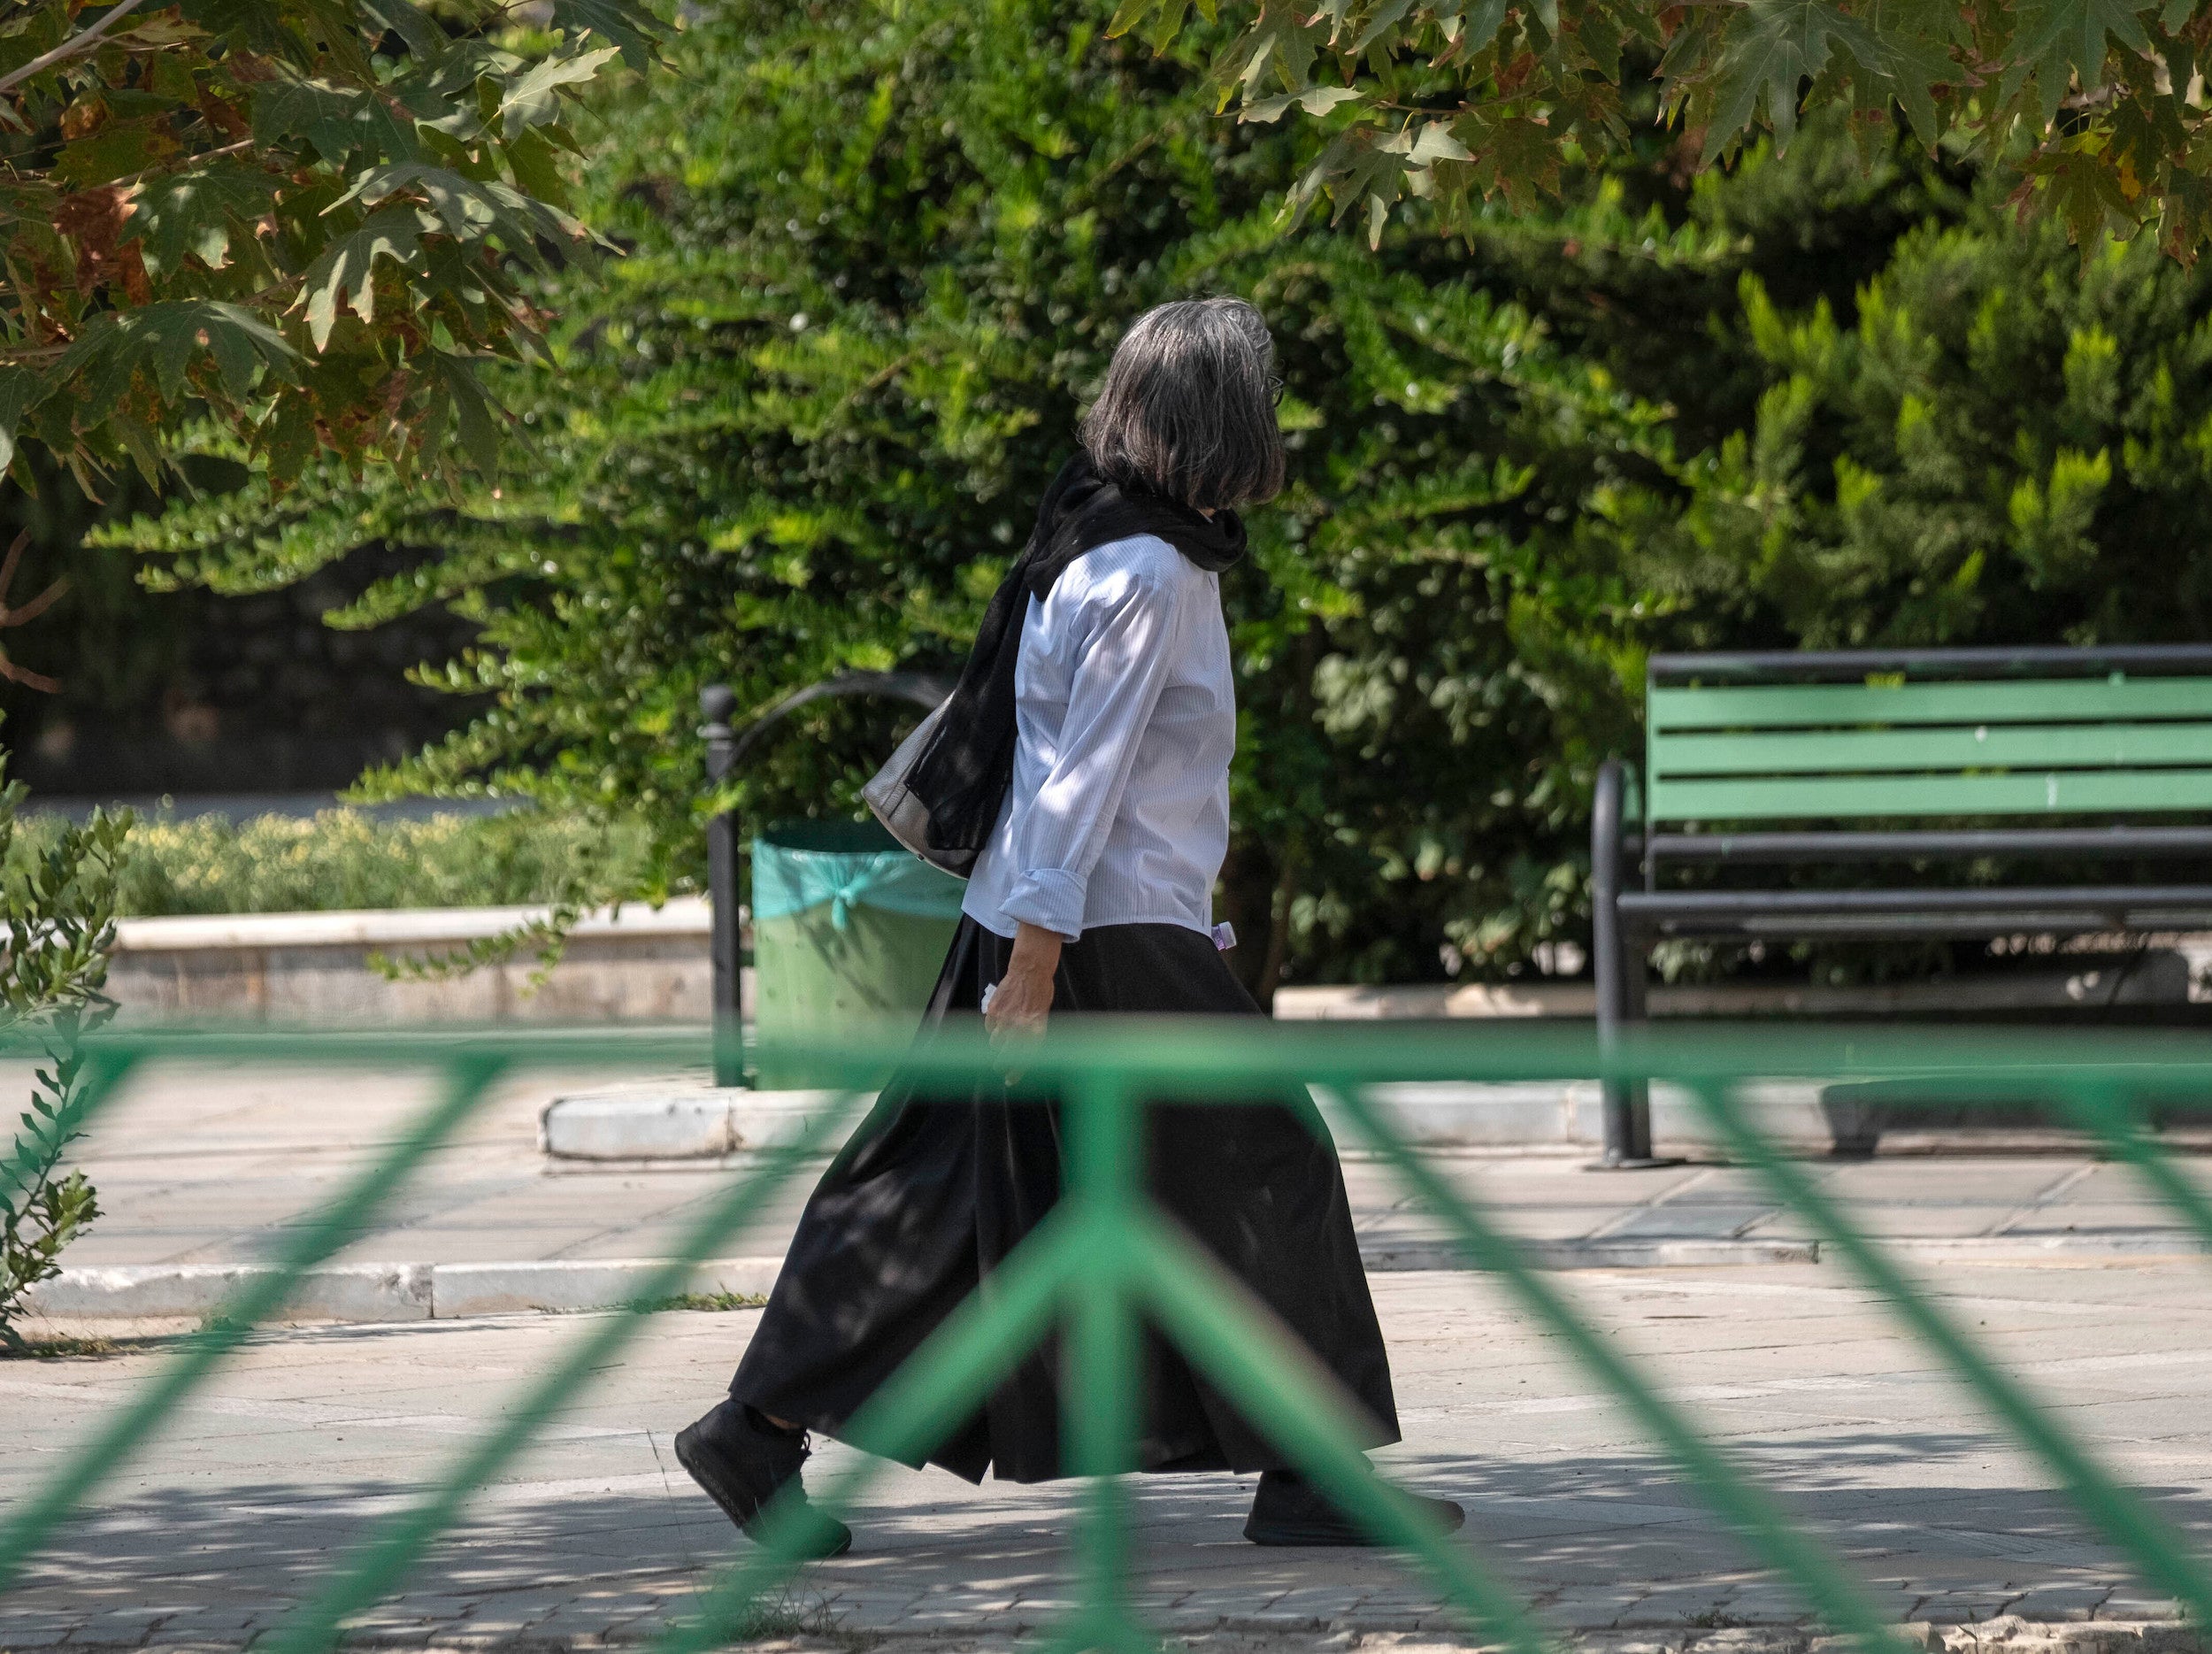 An Iranian woman walks along a street-side in Tehran without wearing her headscarf.